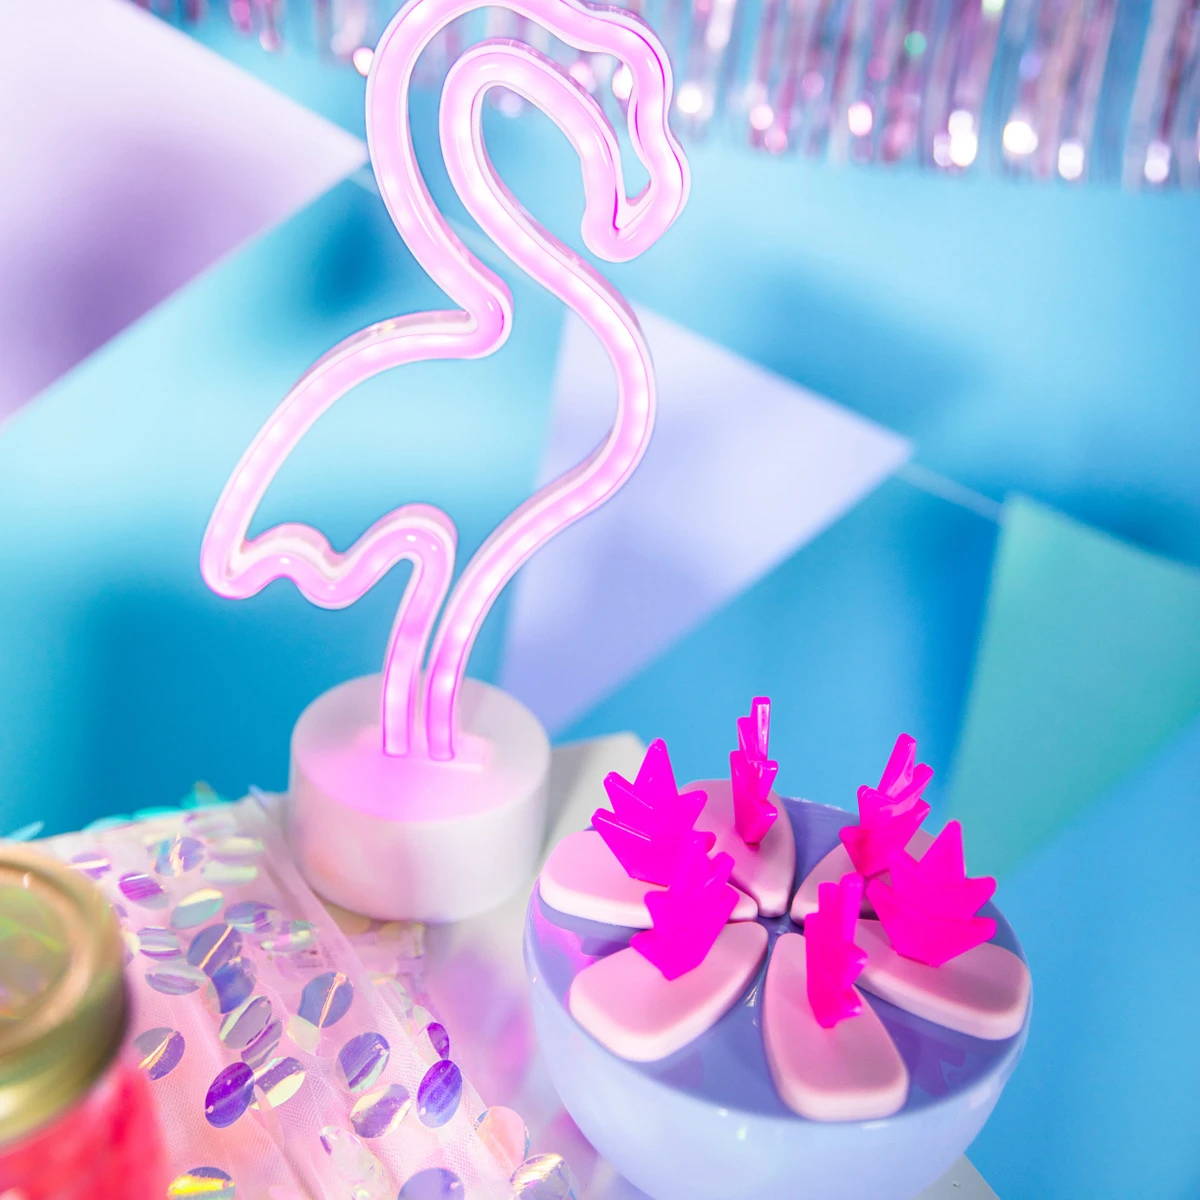 Flamingo-neonlys ved siden af en skål med flamingoformede drinksomrørere, som giver omgivelserne et levende rosa skær.